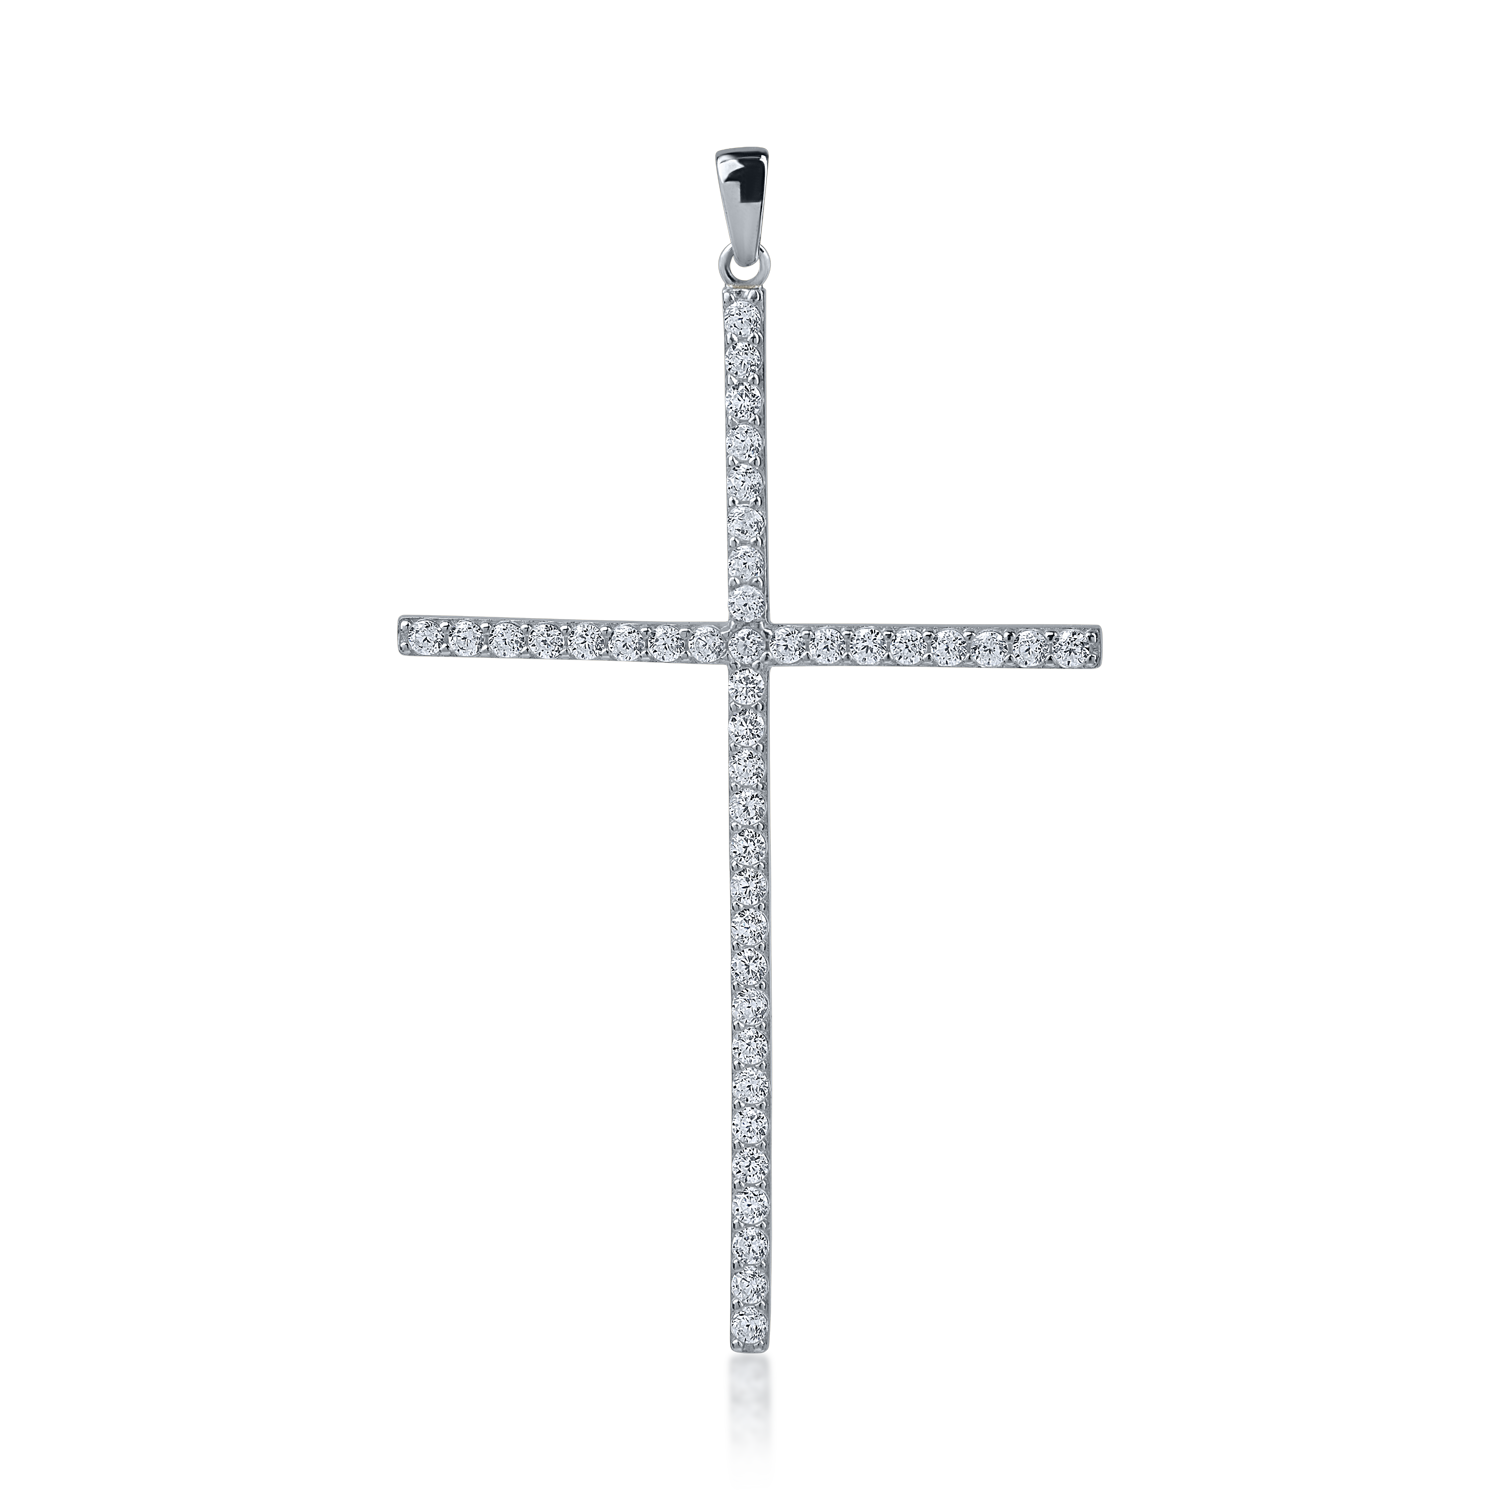 White gold cross pendant